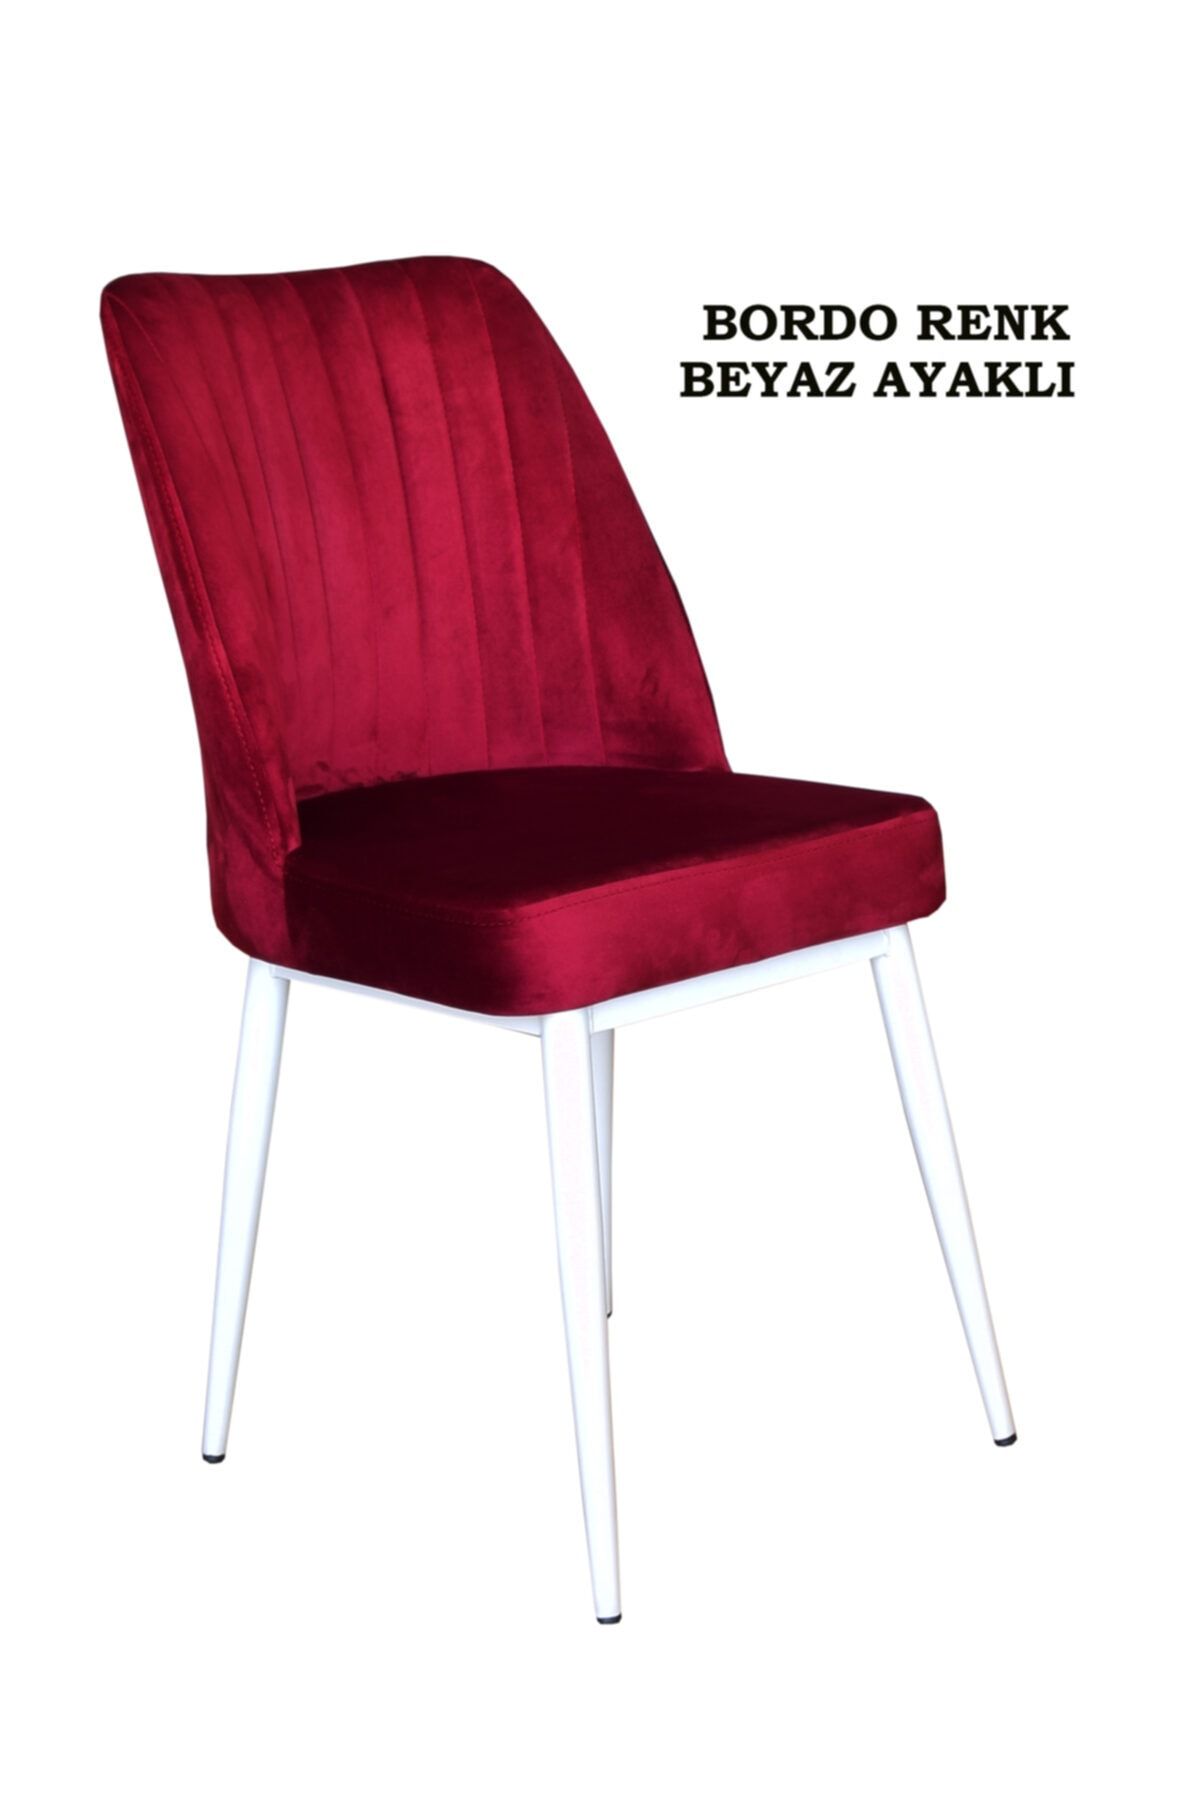 Ankhira Elit Sandalye, Mutfak Ve Salon Sandalyesi, Silinebilir Bordo Renk Kumaş, Beyaz Ayaklı